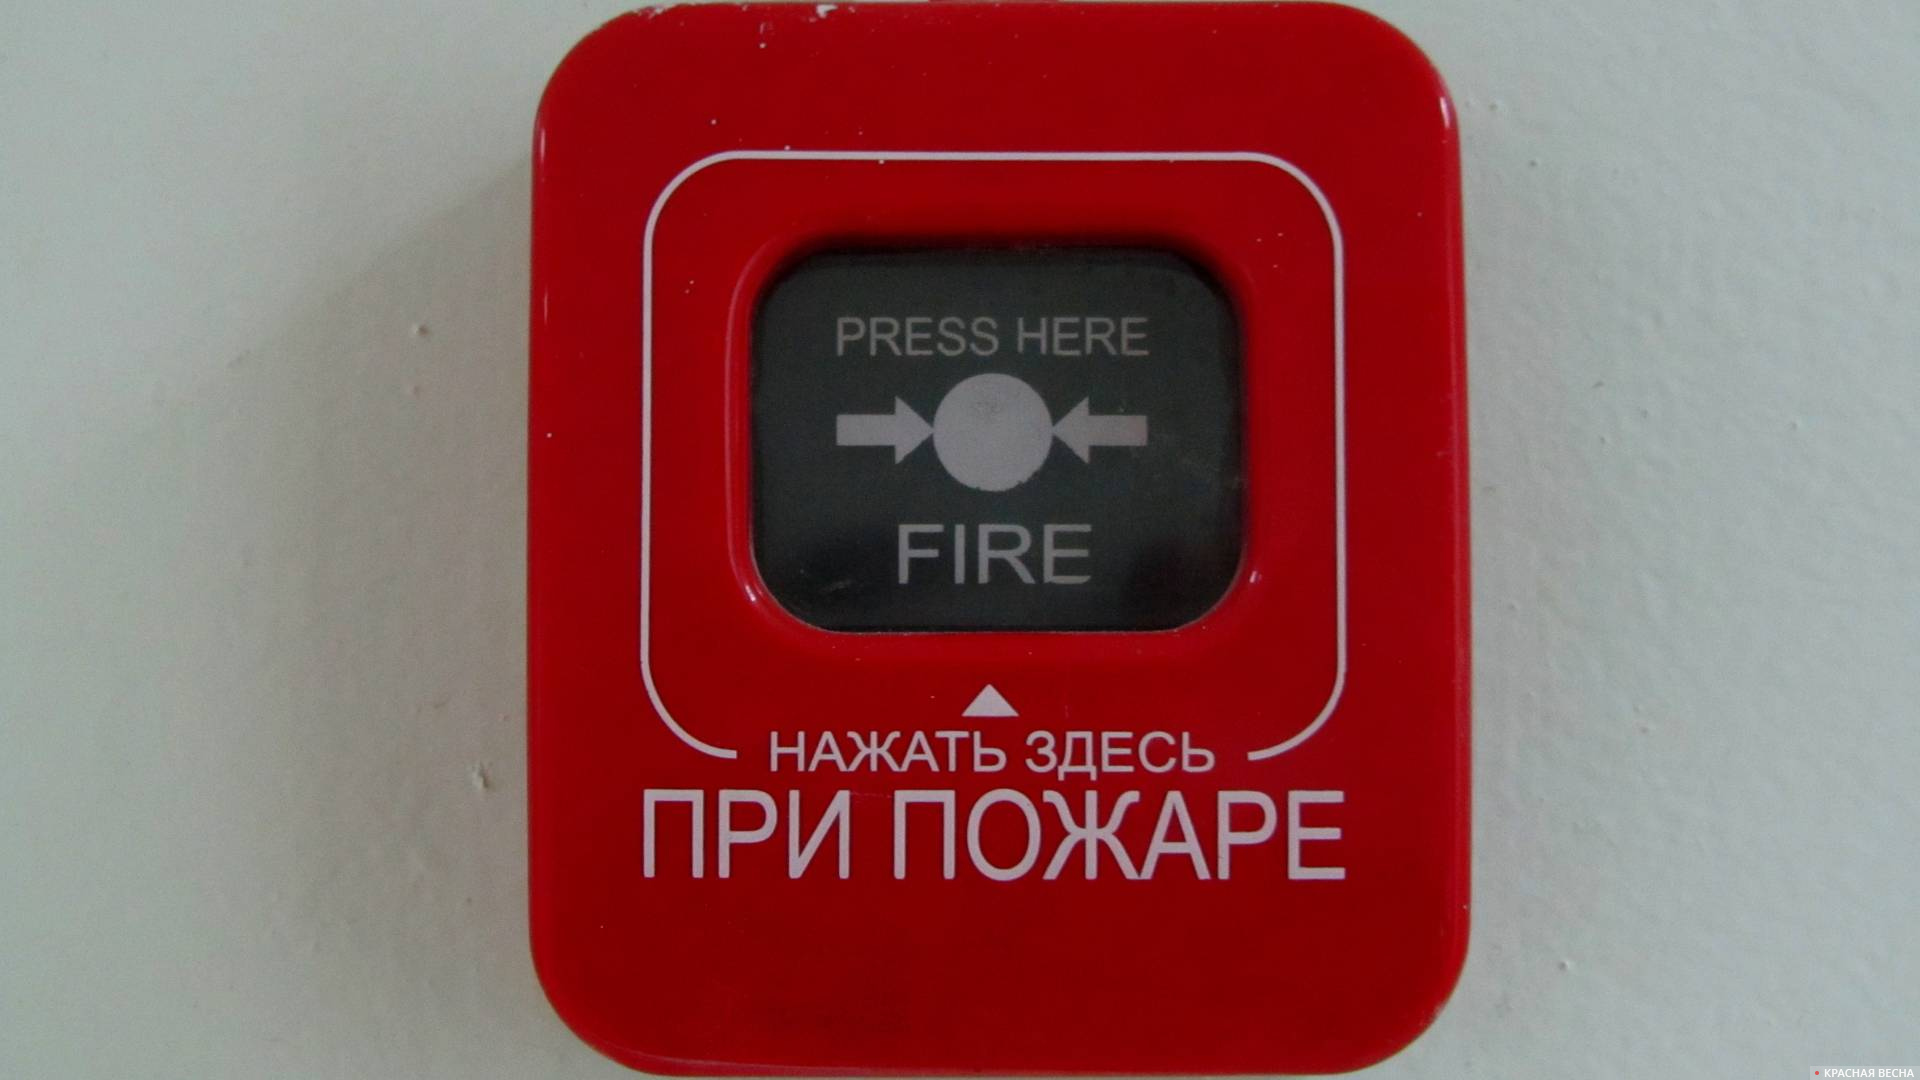 Красная пожарная сигнализация. Пожарная кнопка. Кнопка пожарной сигнализации. Кнопка пожарной тревоги. Кнопка пожарной сигнализации ручного включения.